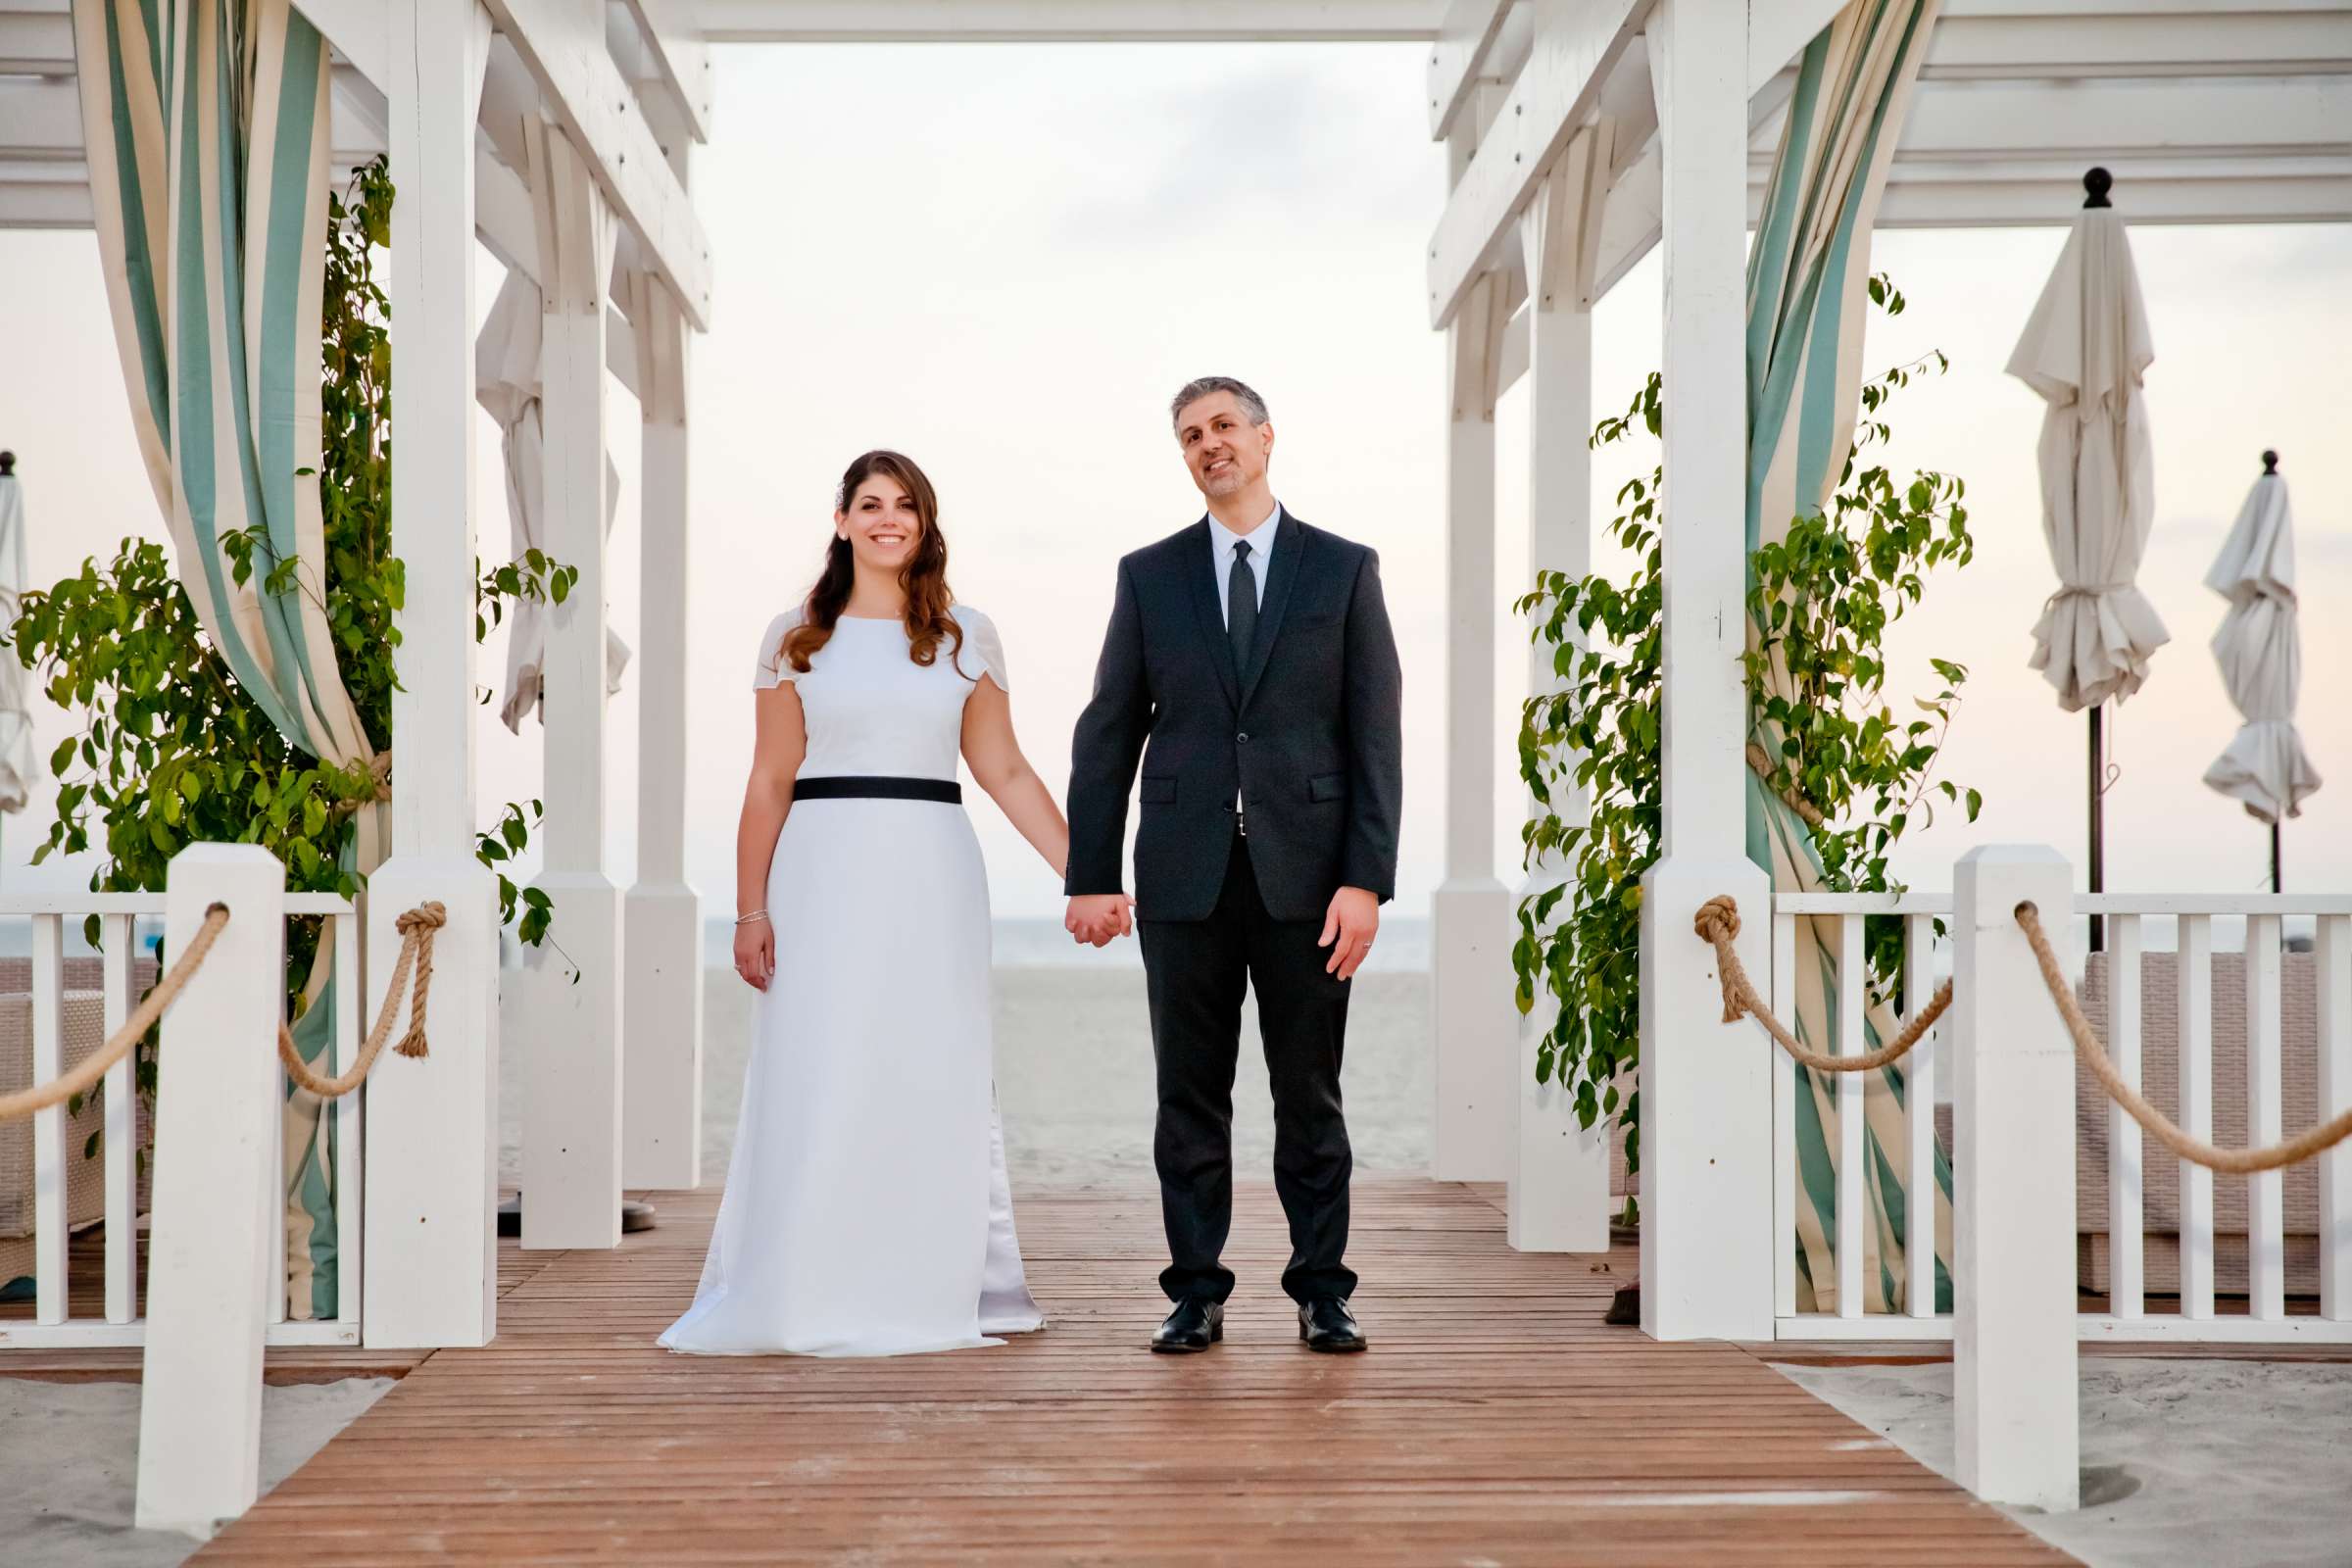 Hotel Del Coronado Wedding, Melis and Marc Wedding Photo #42 by True Photography